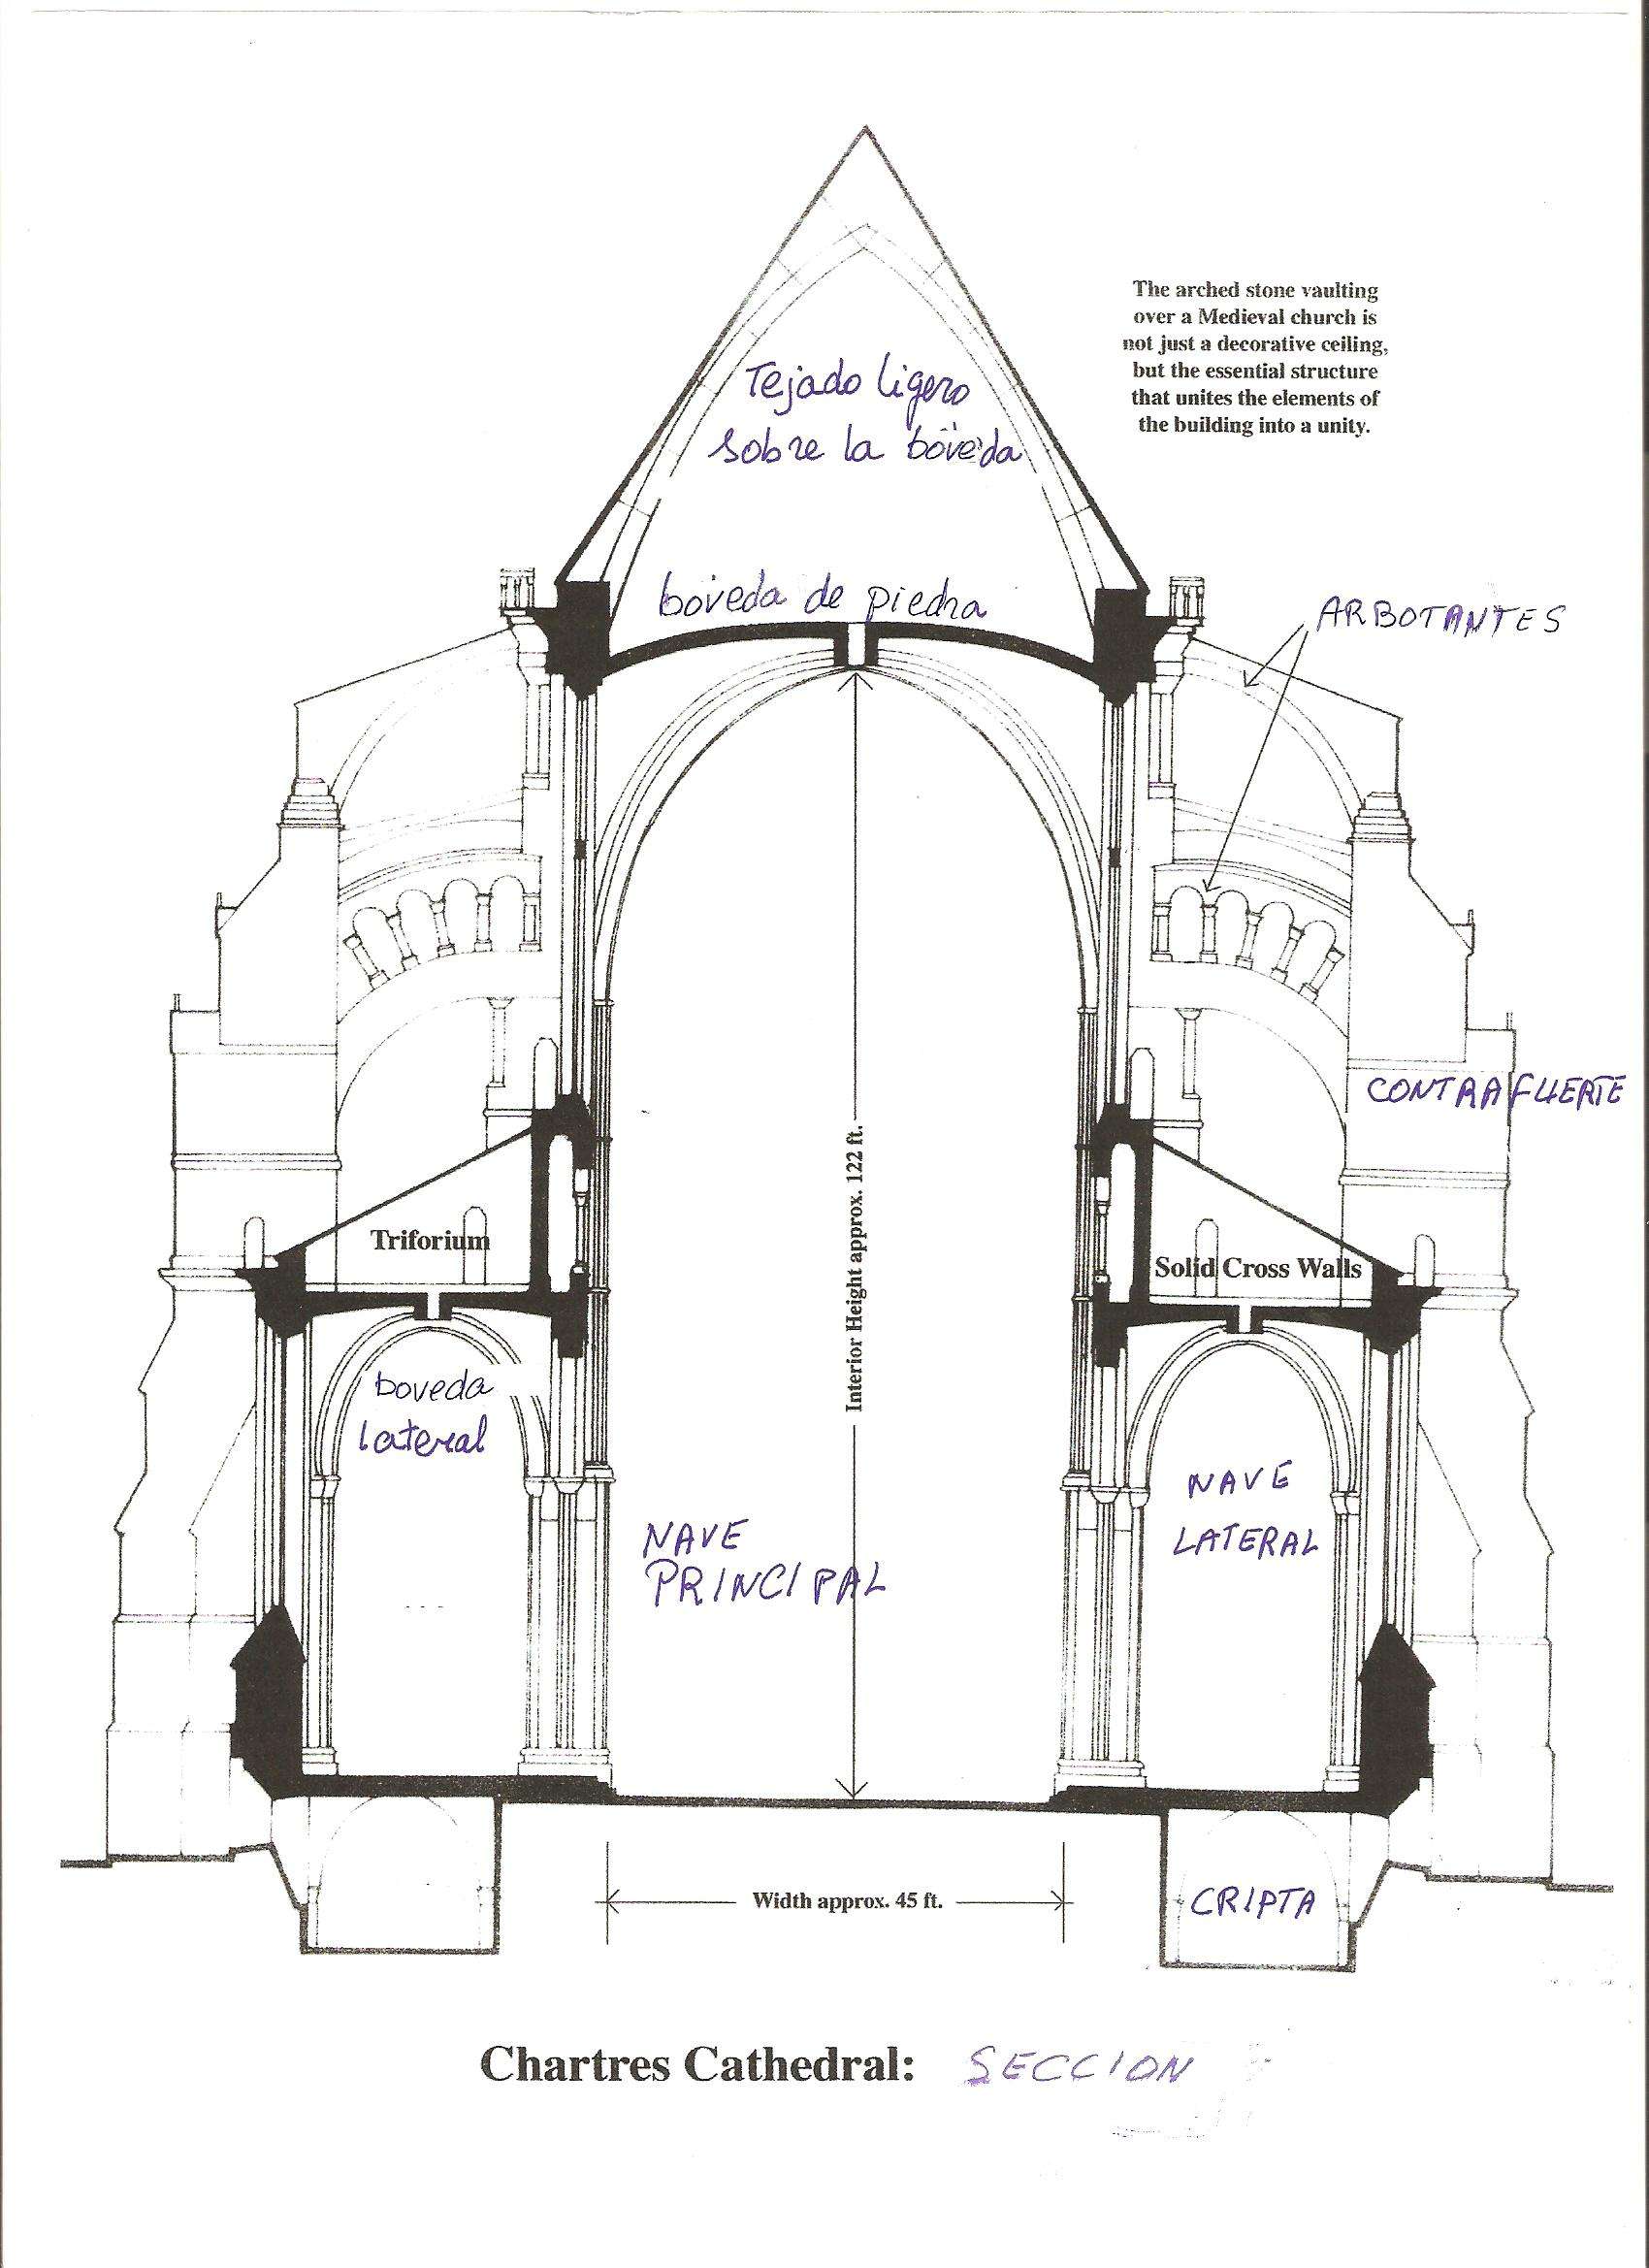 Chartres: Arte, espiritualidad y esoterismo. - Blogs de Francia - Arquitectura de la catedral de Chartres (3)